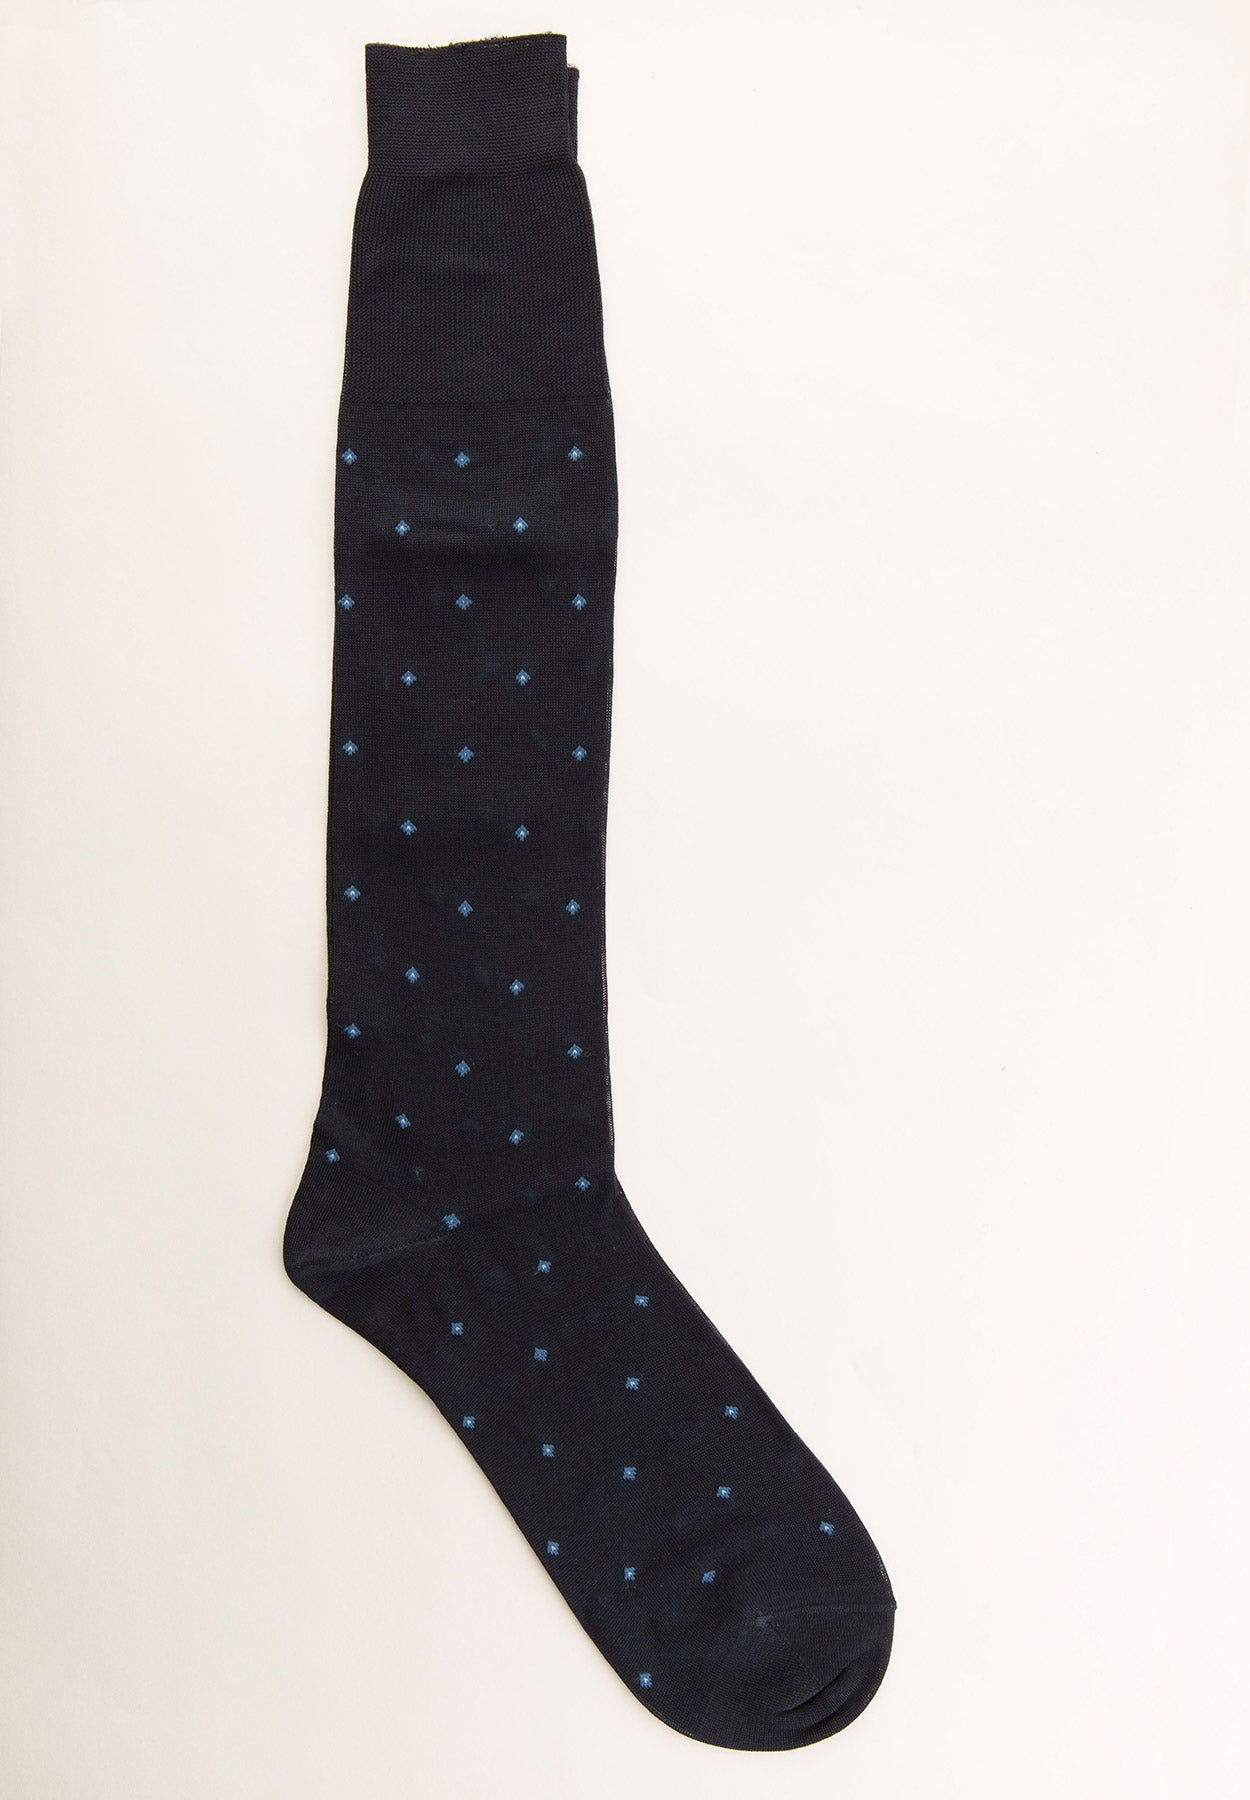 Blue lisle socks with diamond pattern